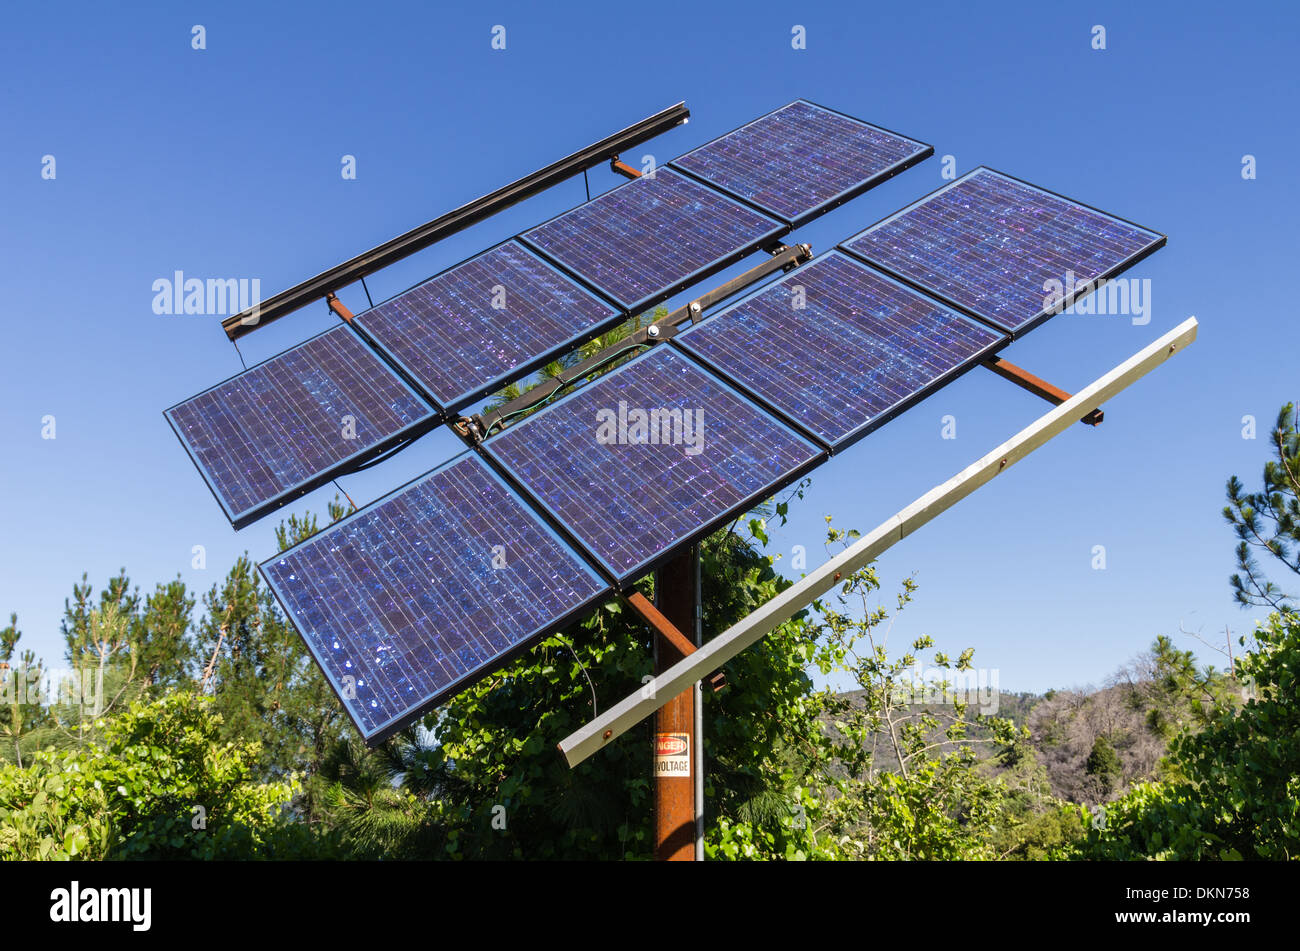 Un panneau solaire pour fournir de l'électricité dans une région éloignée Banque D'Images